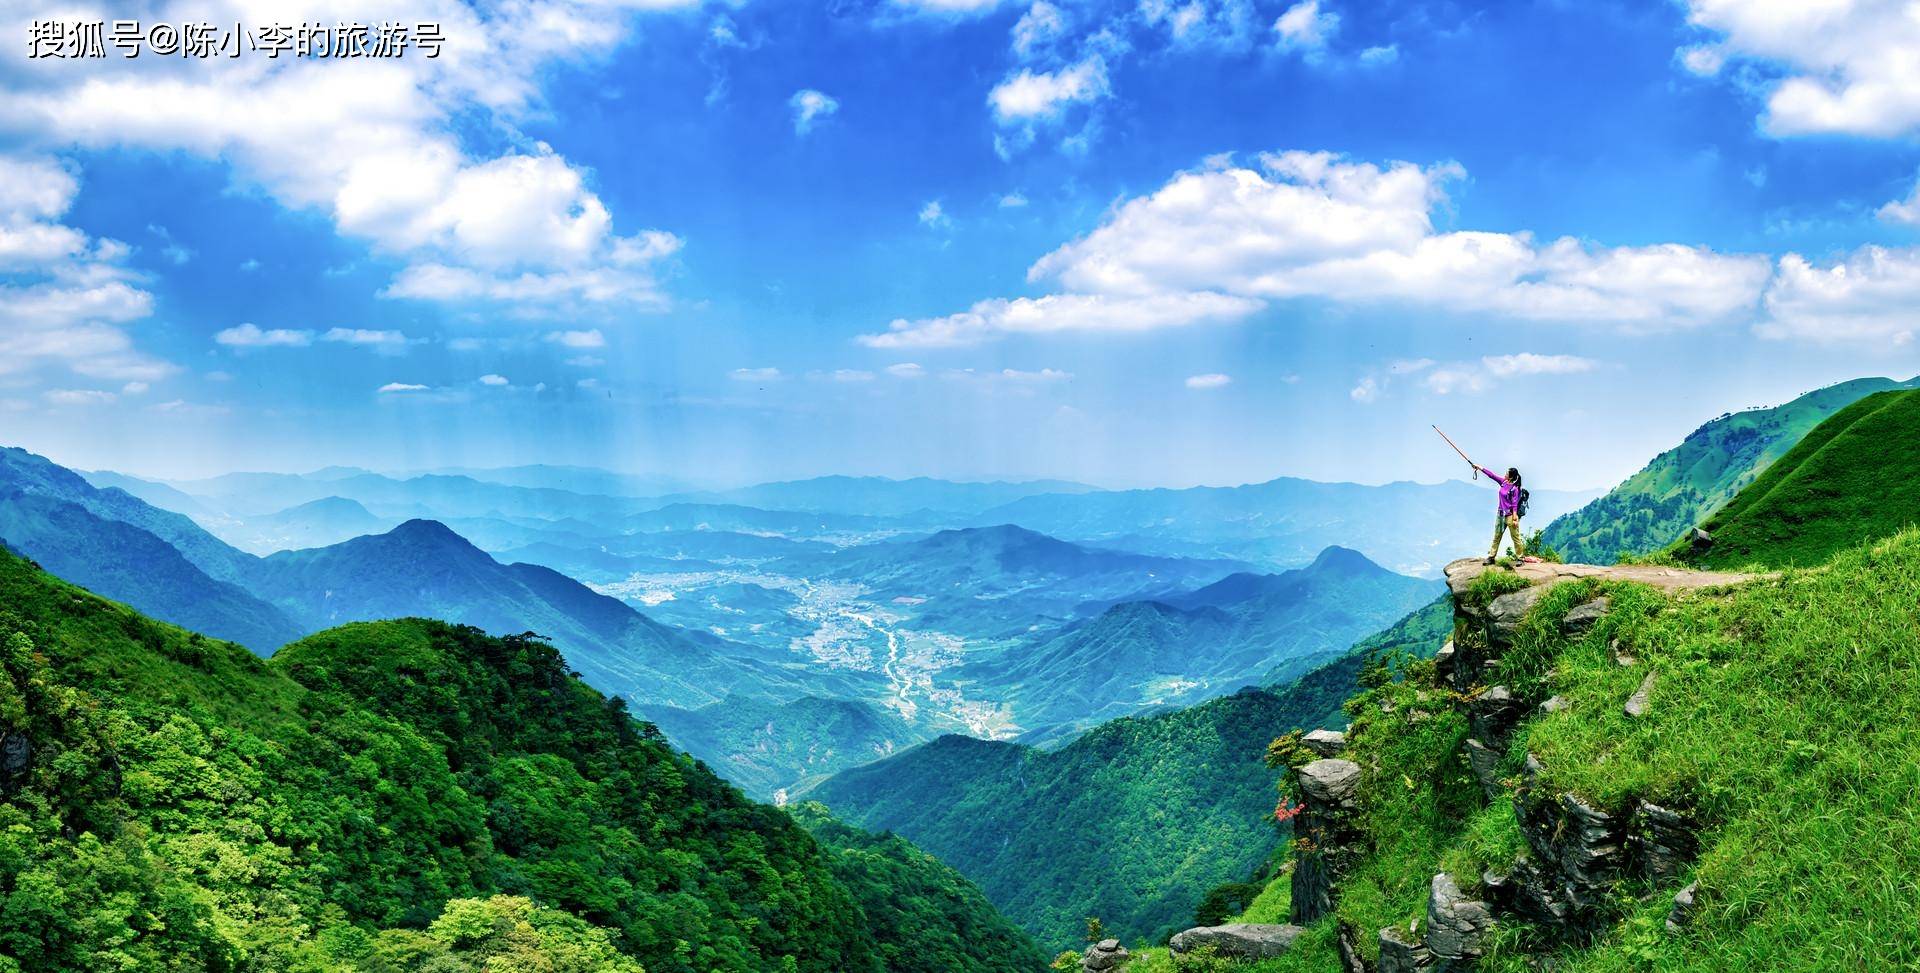 康县阳坝生态旅游风景区,甘肃的西双版纳,世界名茶之乡